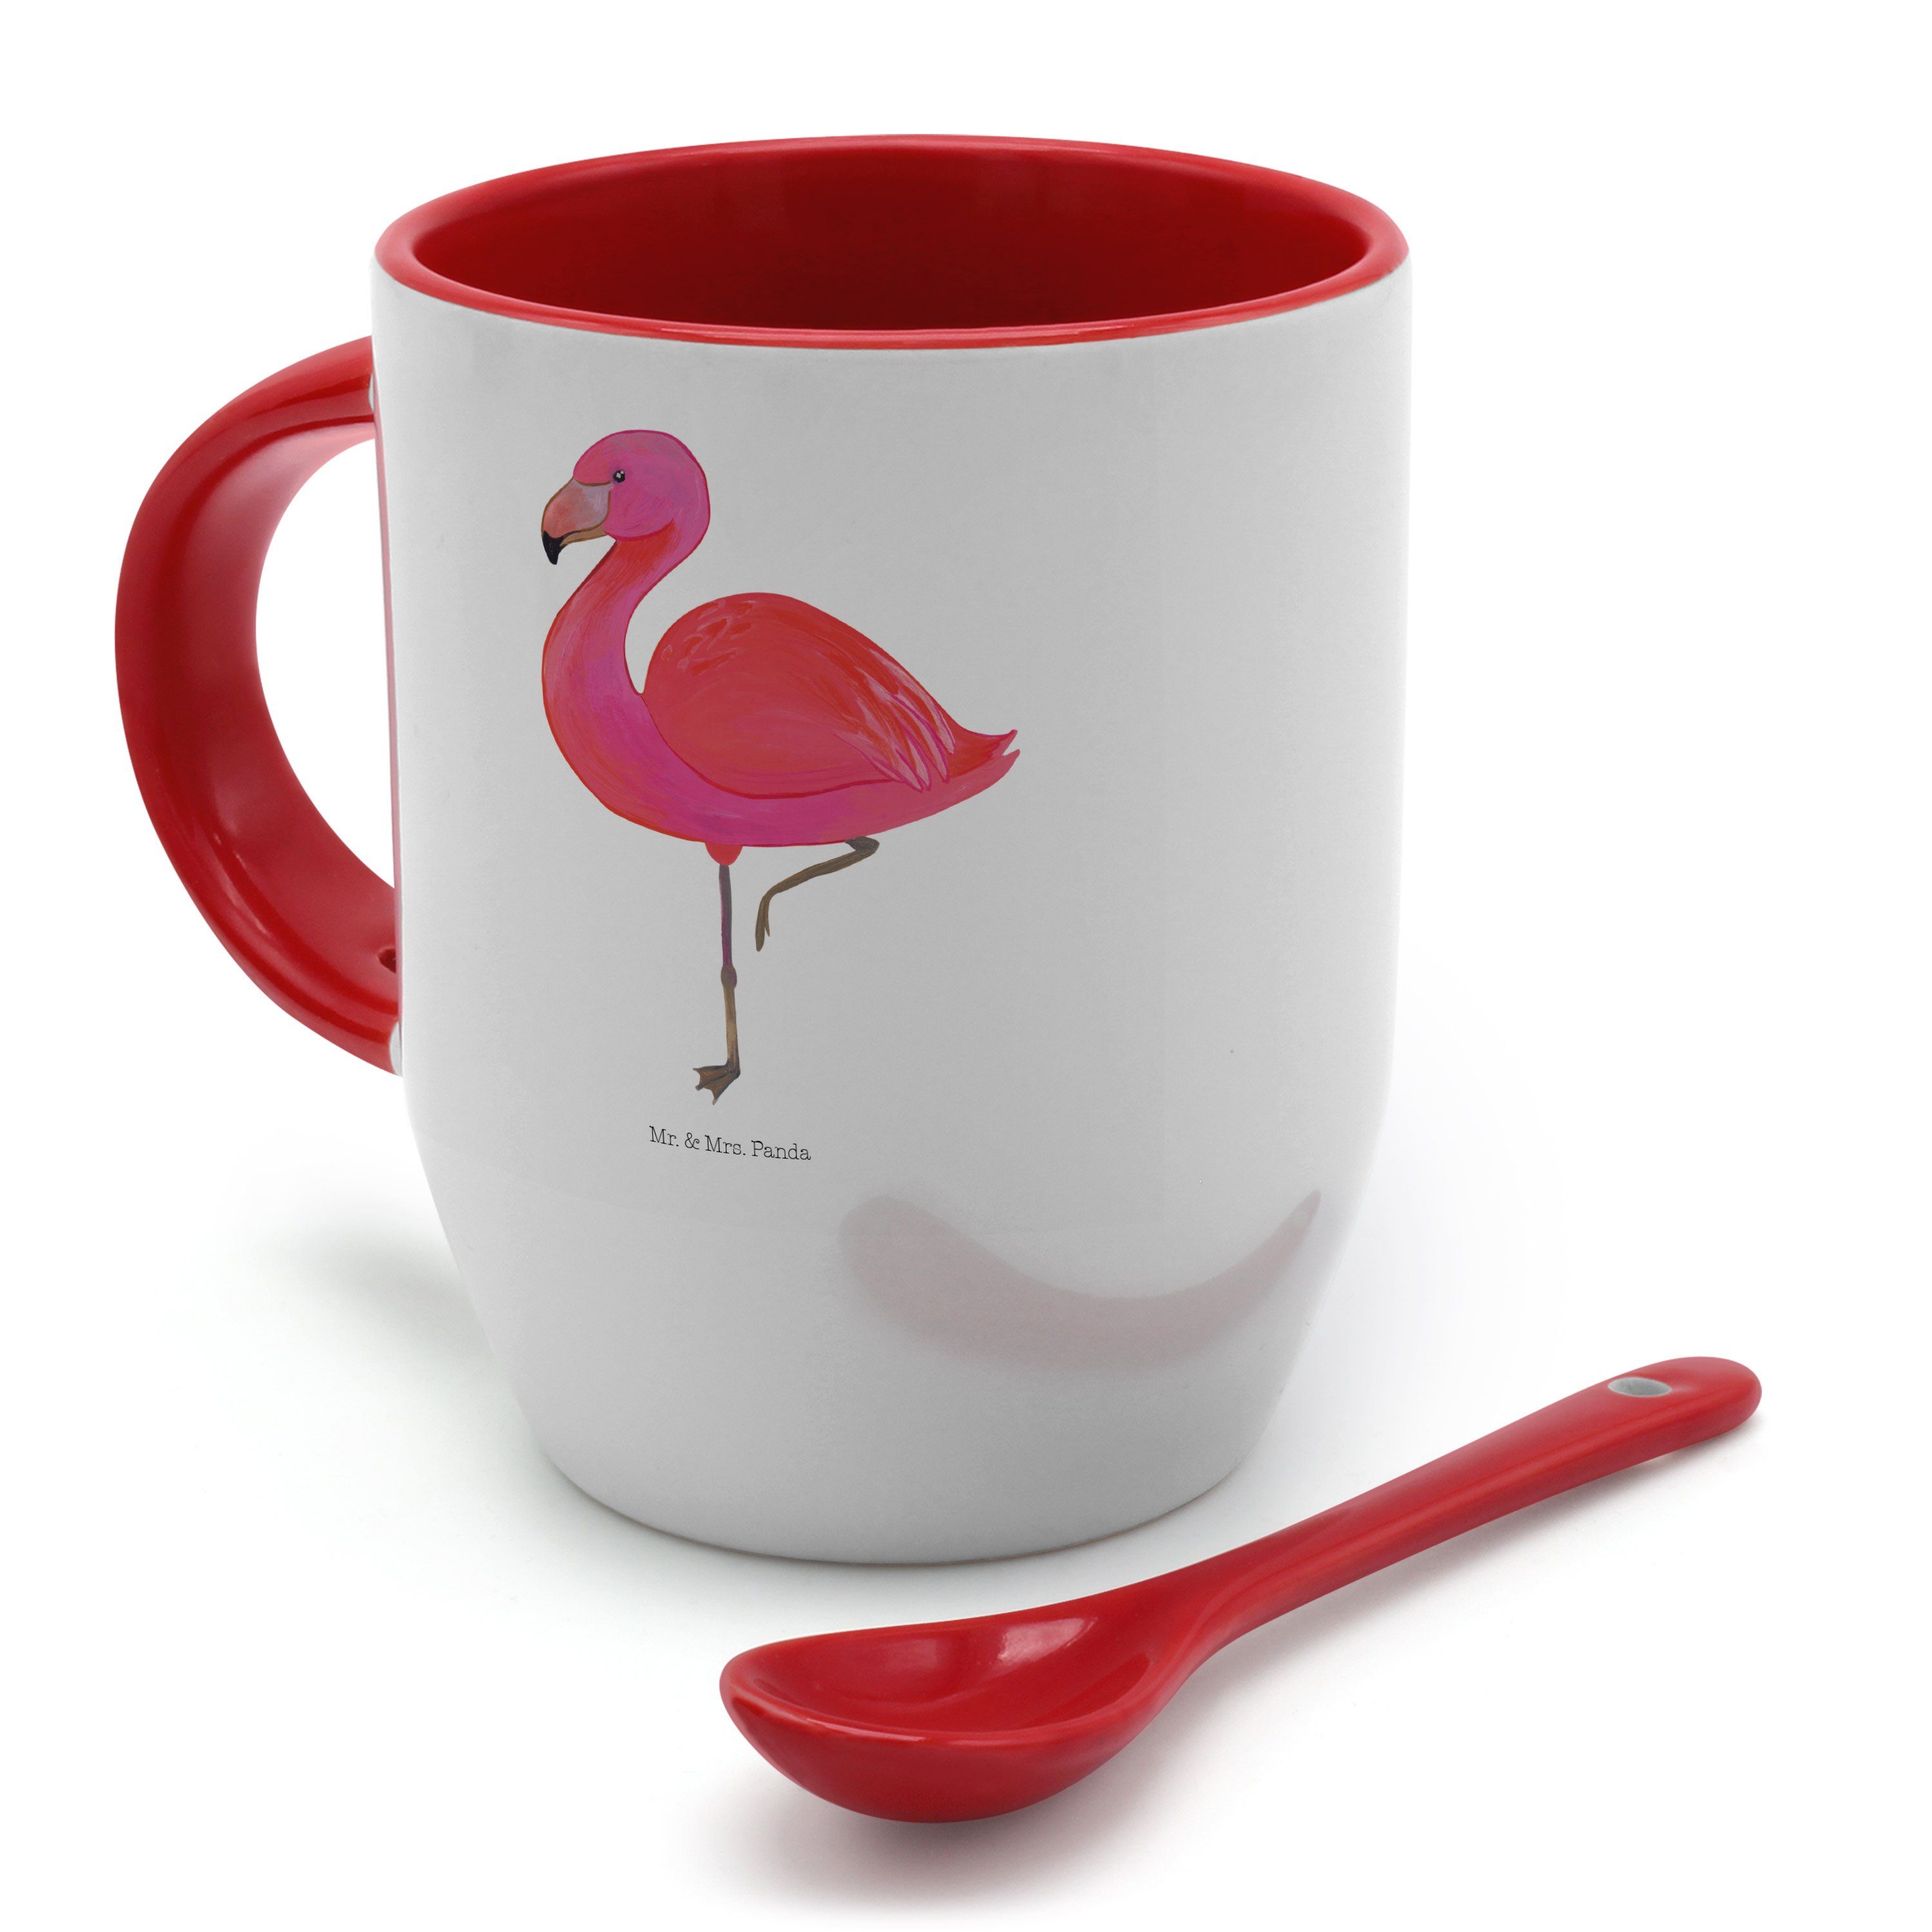 Mr. & Mrs. Panda ich, Löffel, - classic Weiß Tasse Geschenk, Tasse glücklich, mit Flamingo - Keramik